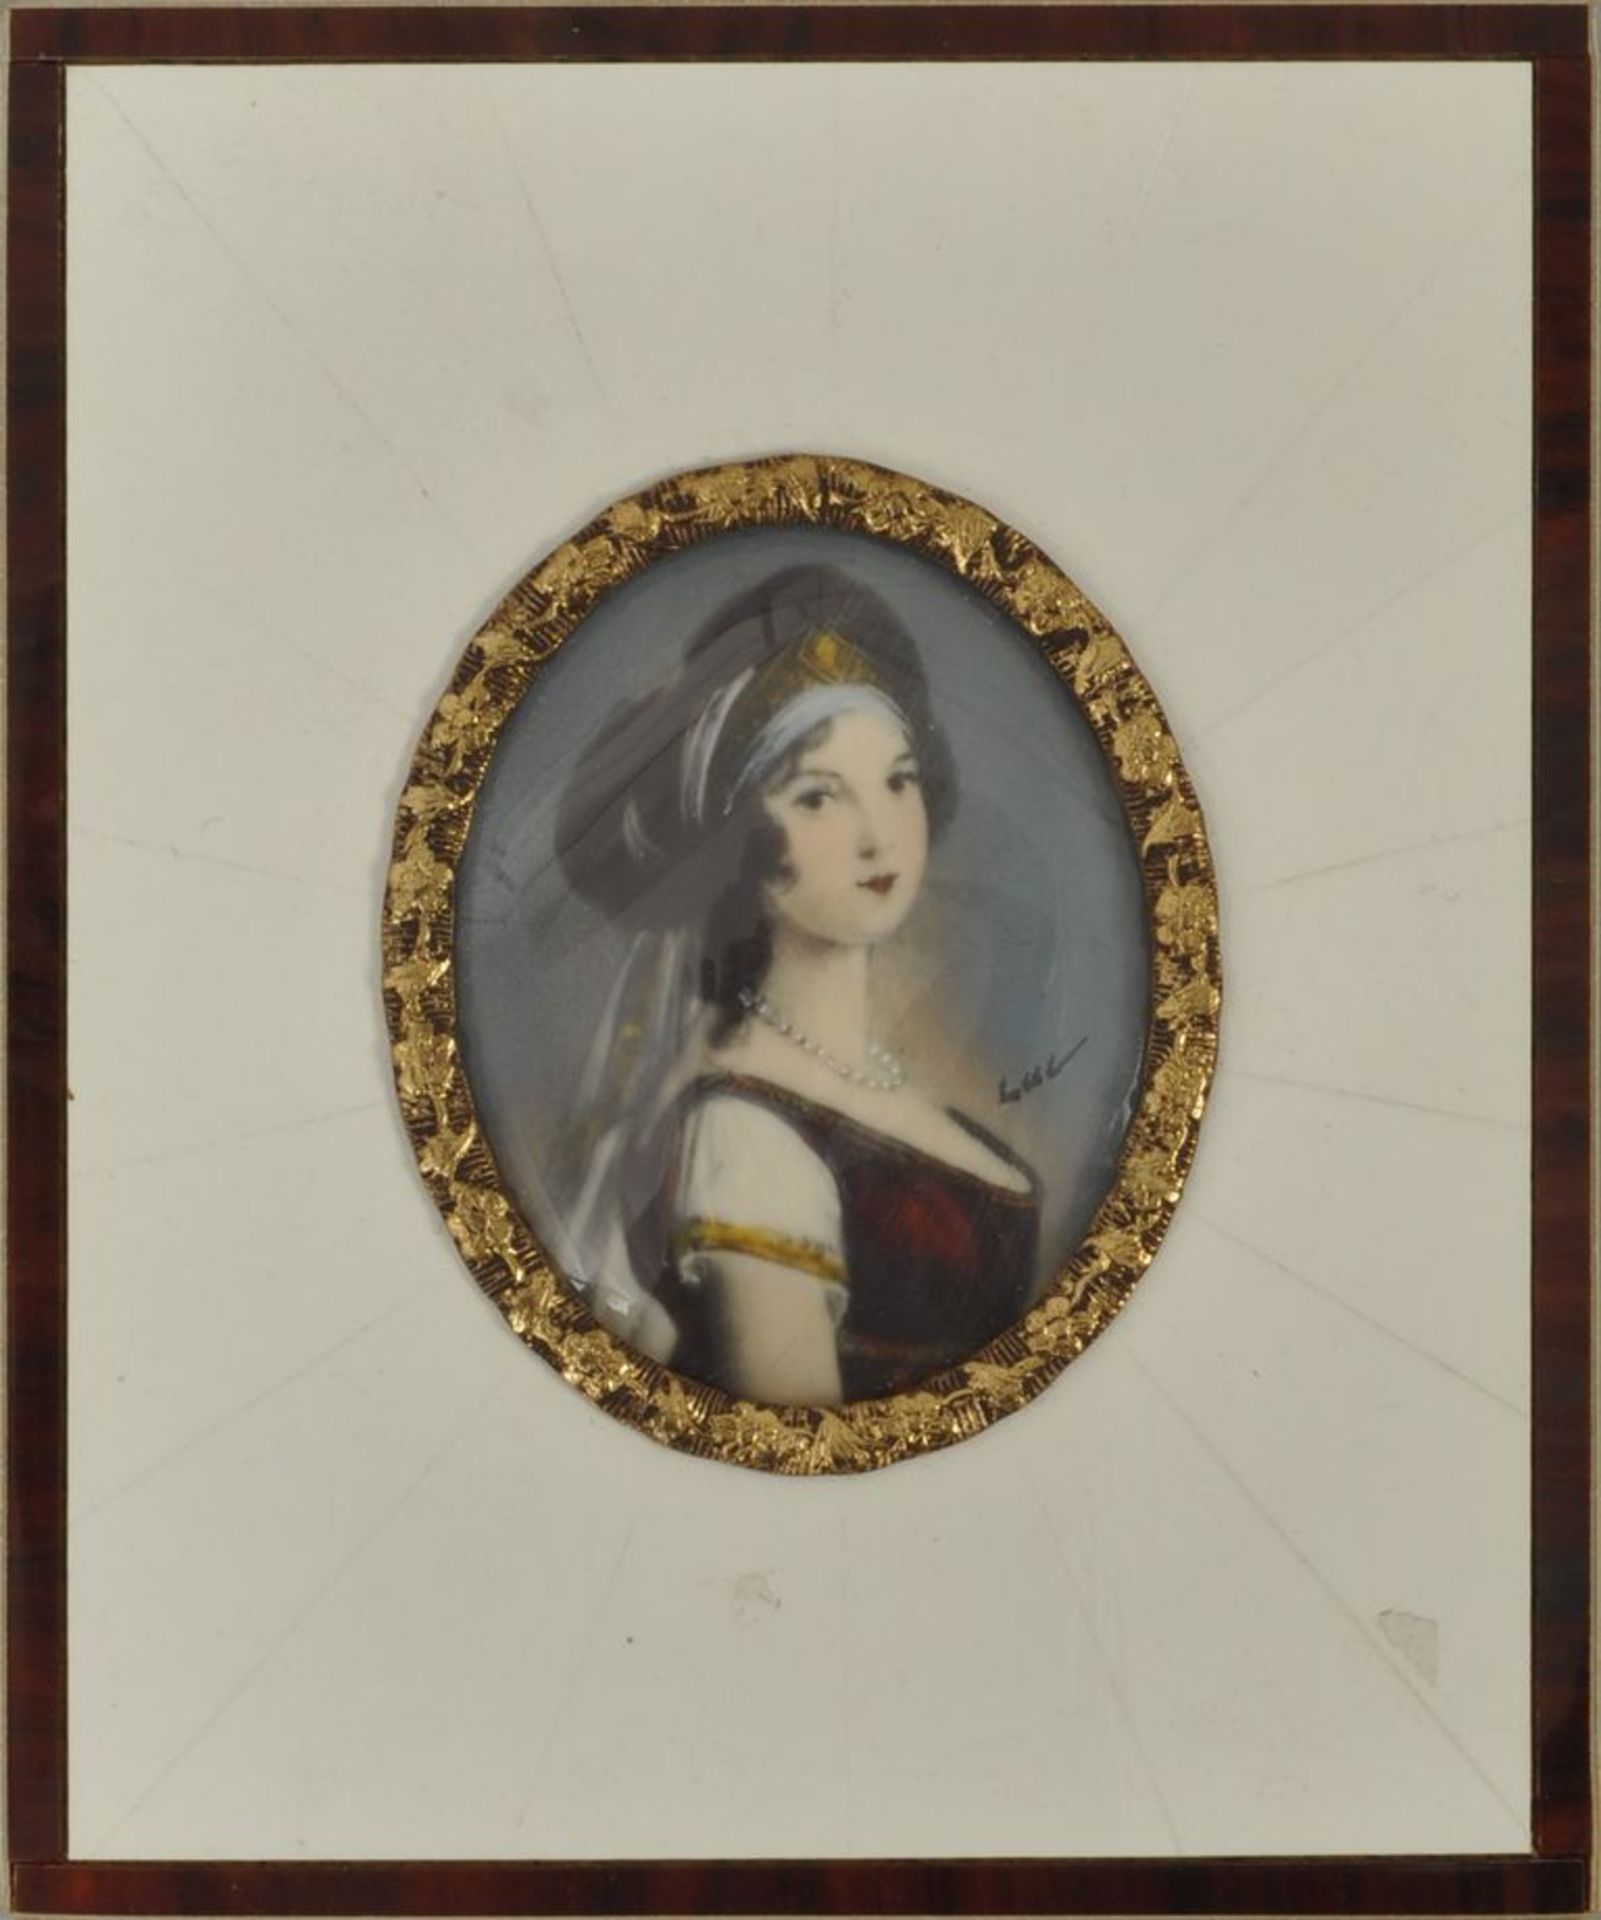 Miniatur, 20. Jh.Ovales Brustportrait der Königin Luise von Preußen. Elfenbeinrahmen, 10,5 x 8,5